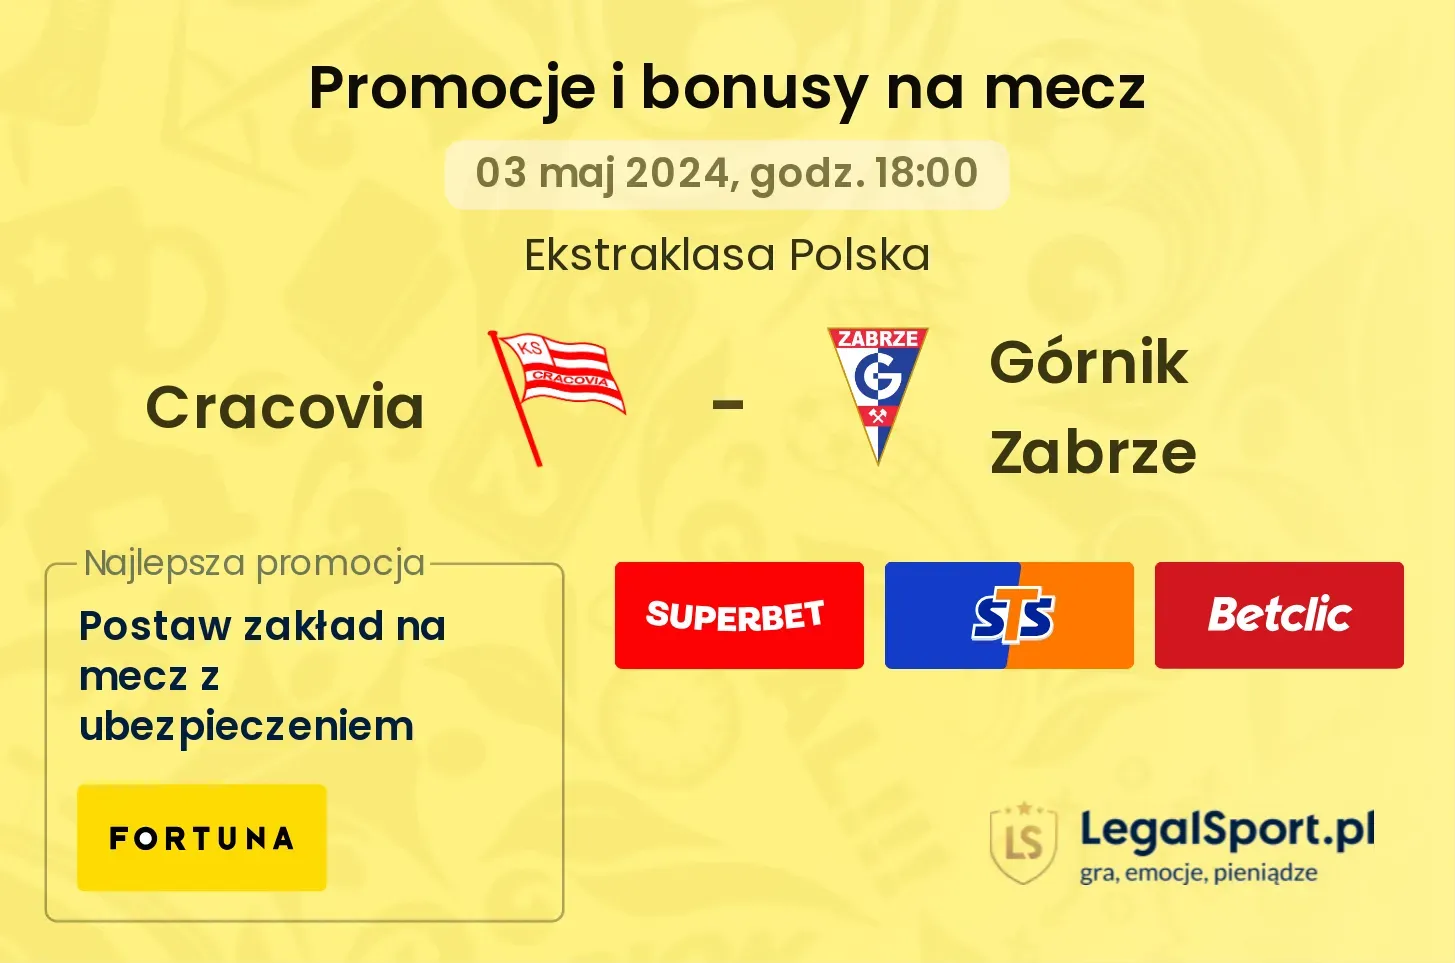 Cracovia - Górnik Zabrze promocje i bonusy (03.05, 18:00)